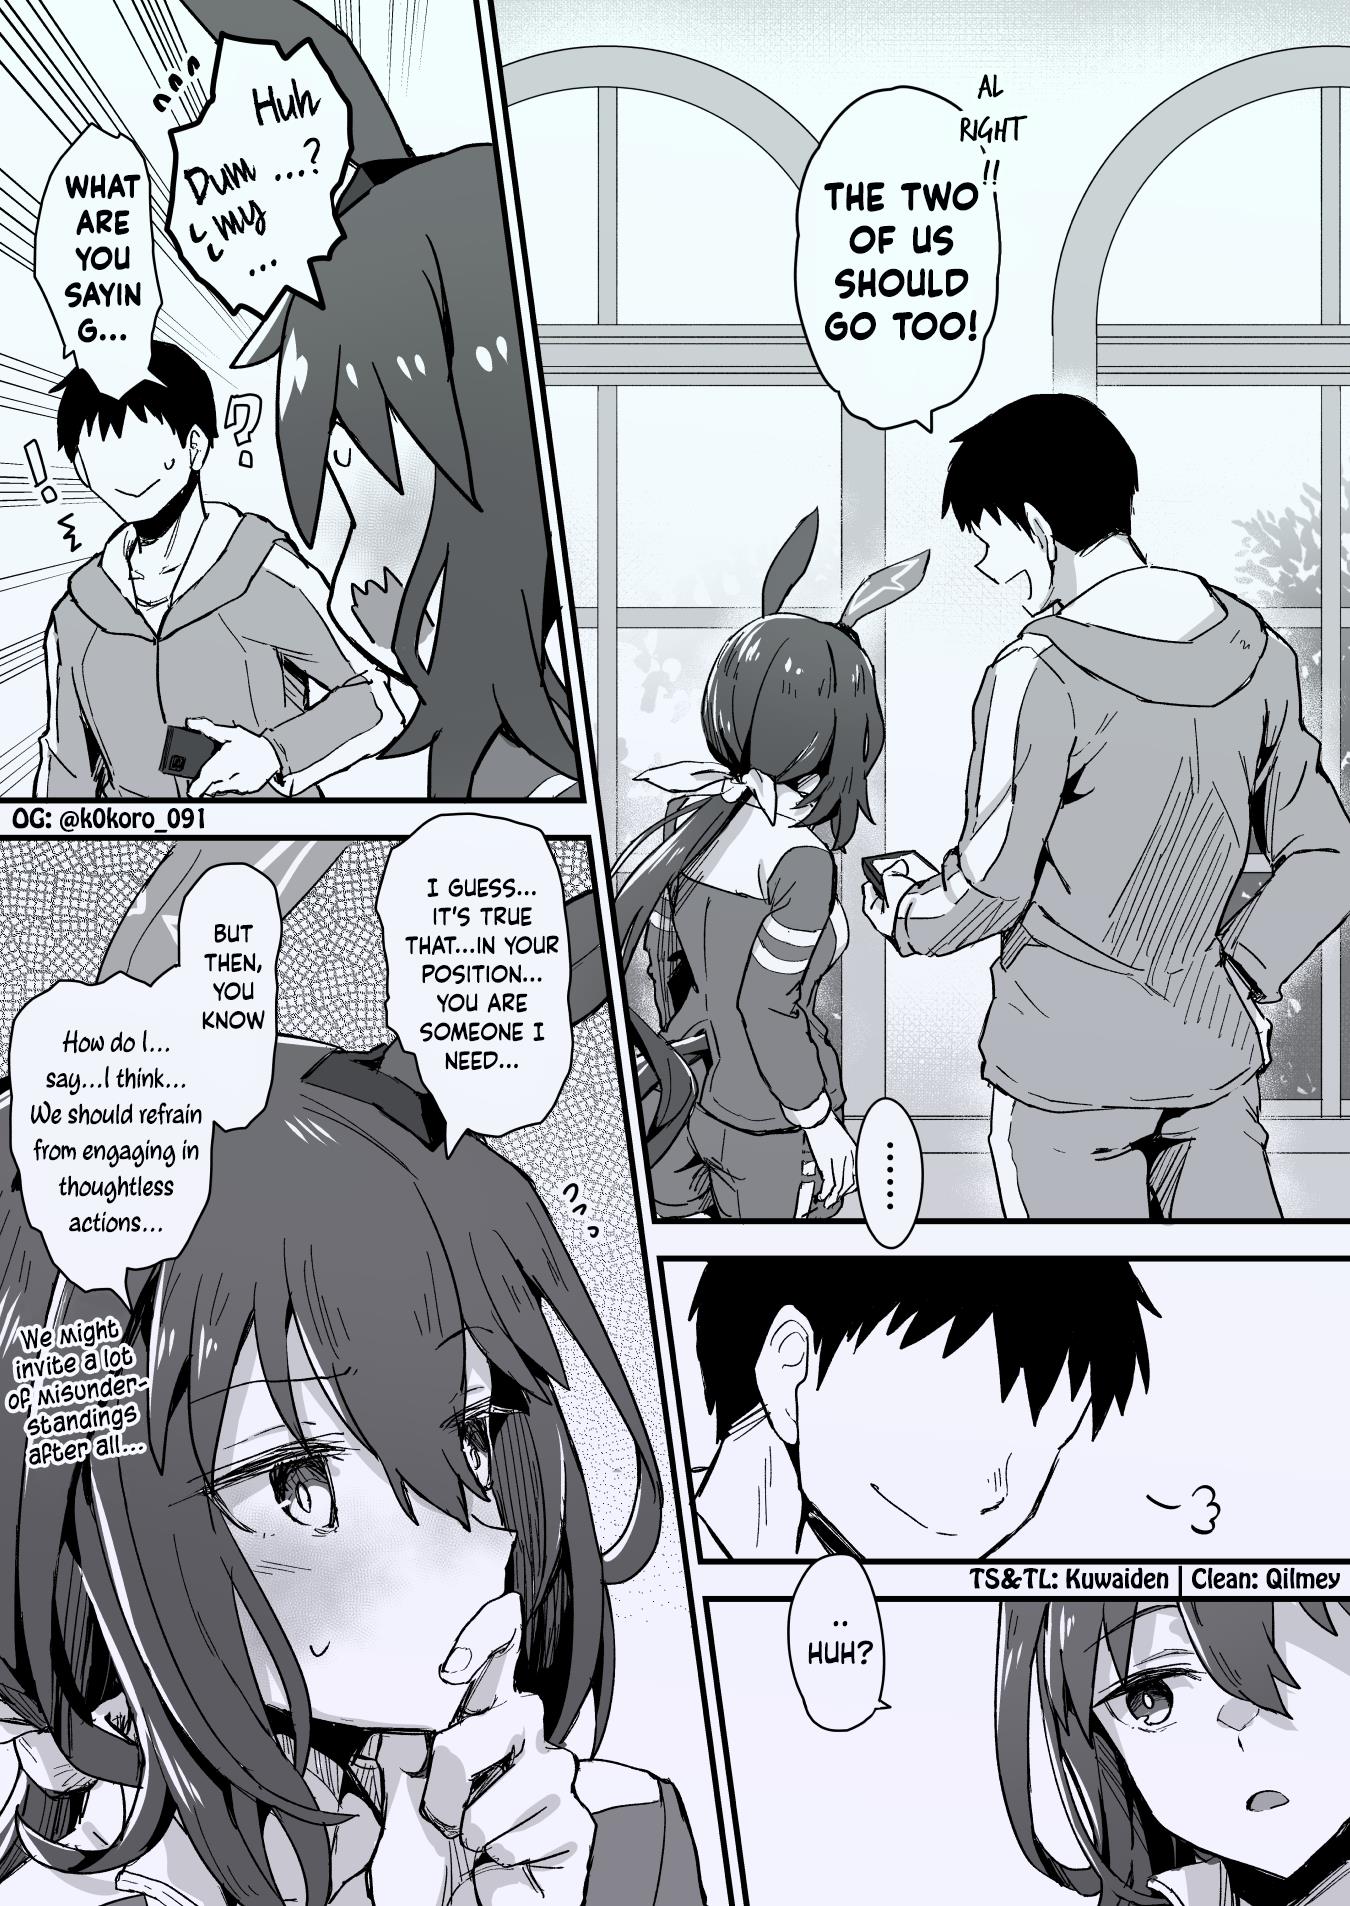 Kokoro-Sensei's Umamusume Shorts (Doujinshi) - Page 3